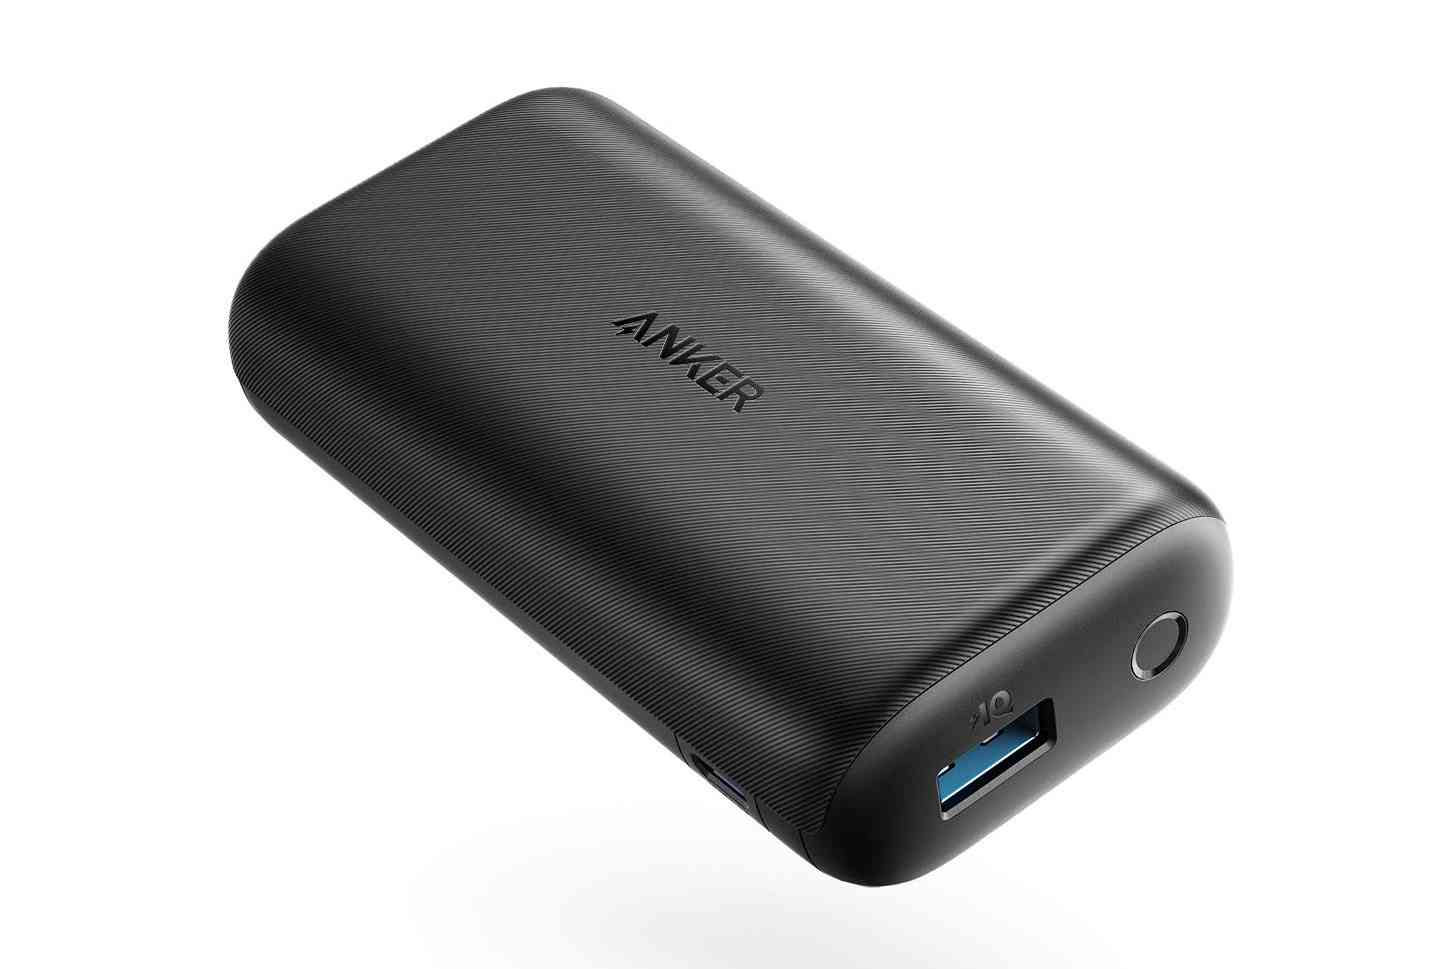 Anker portable battery pack